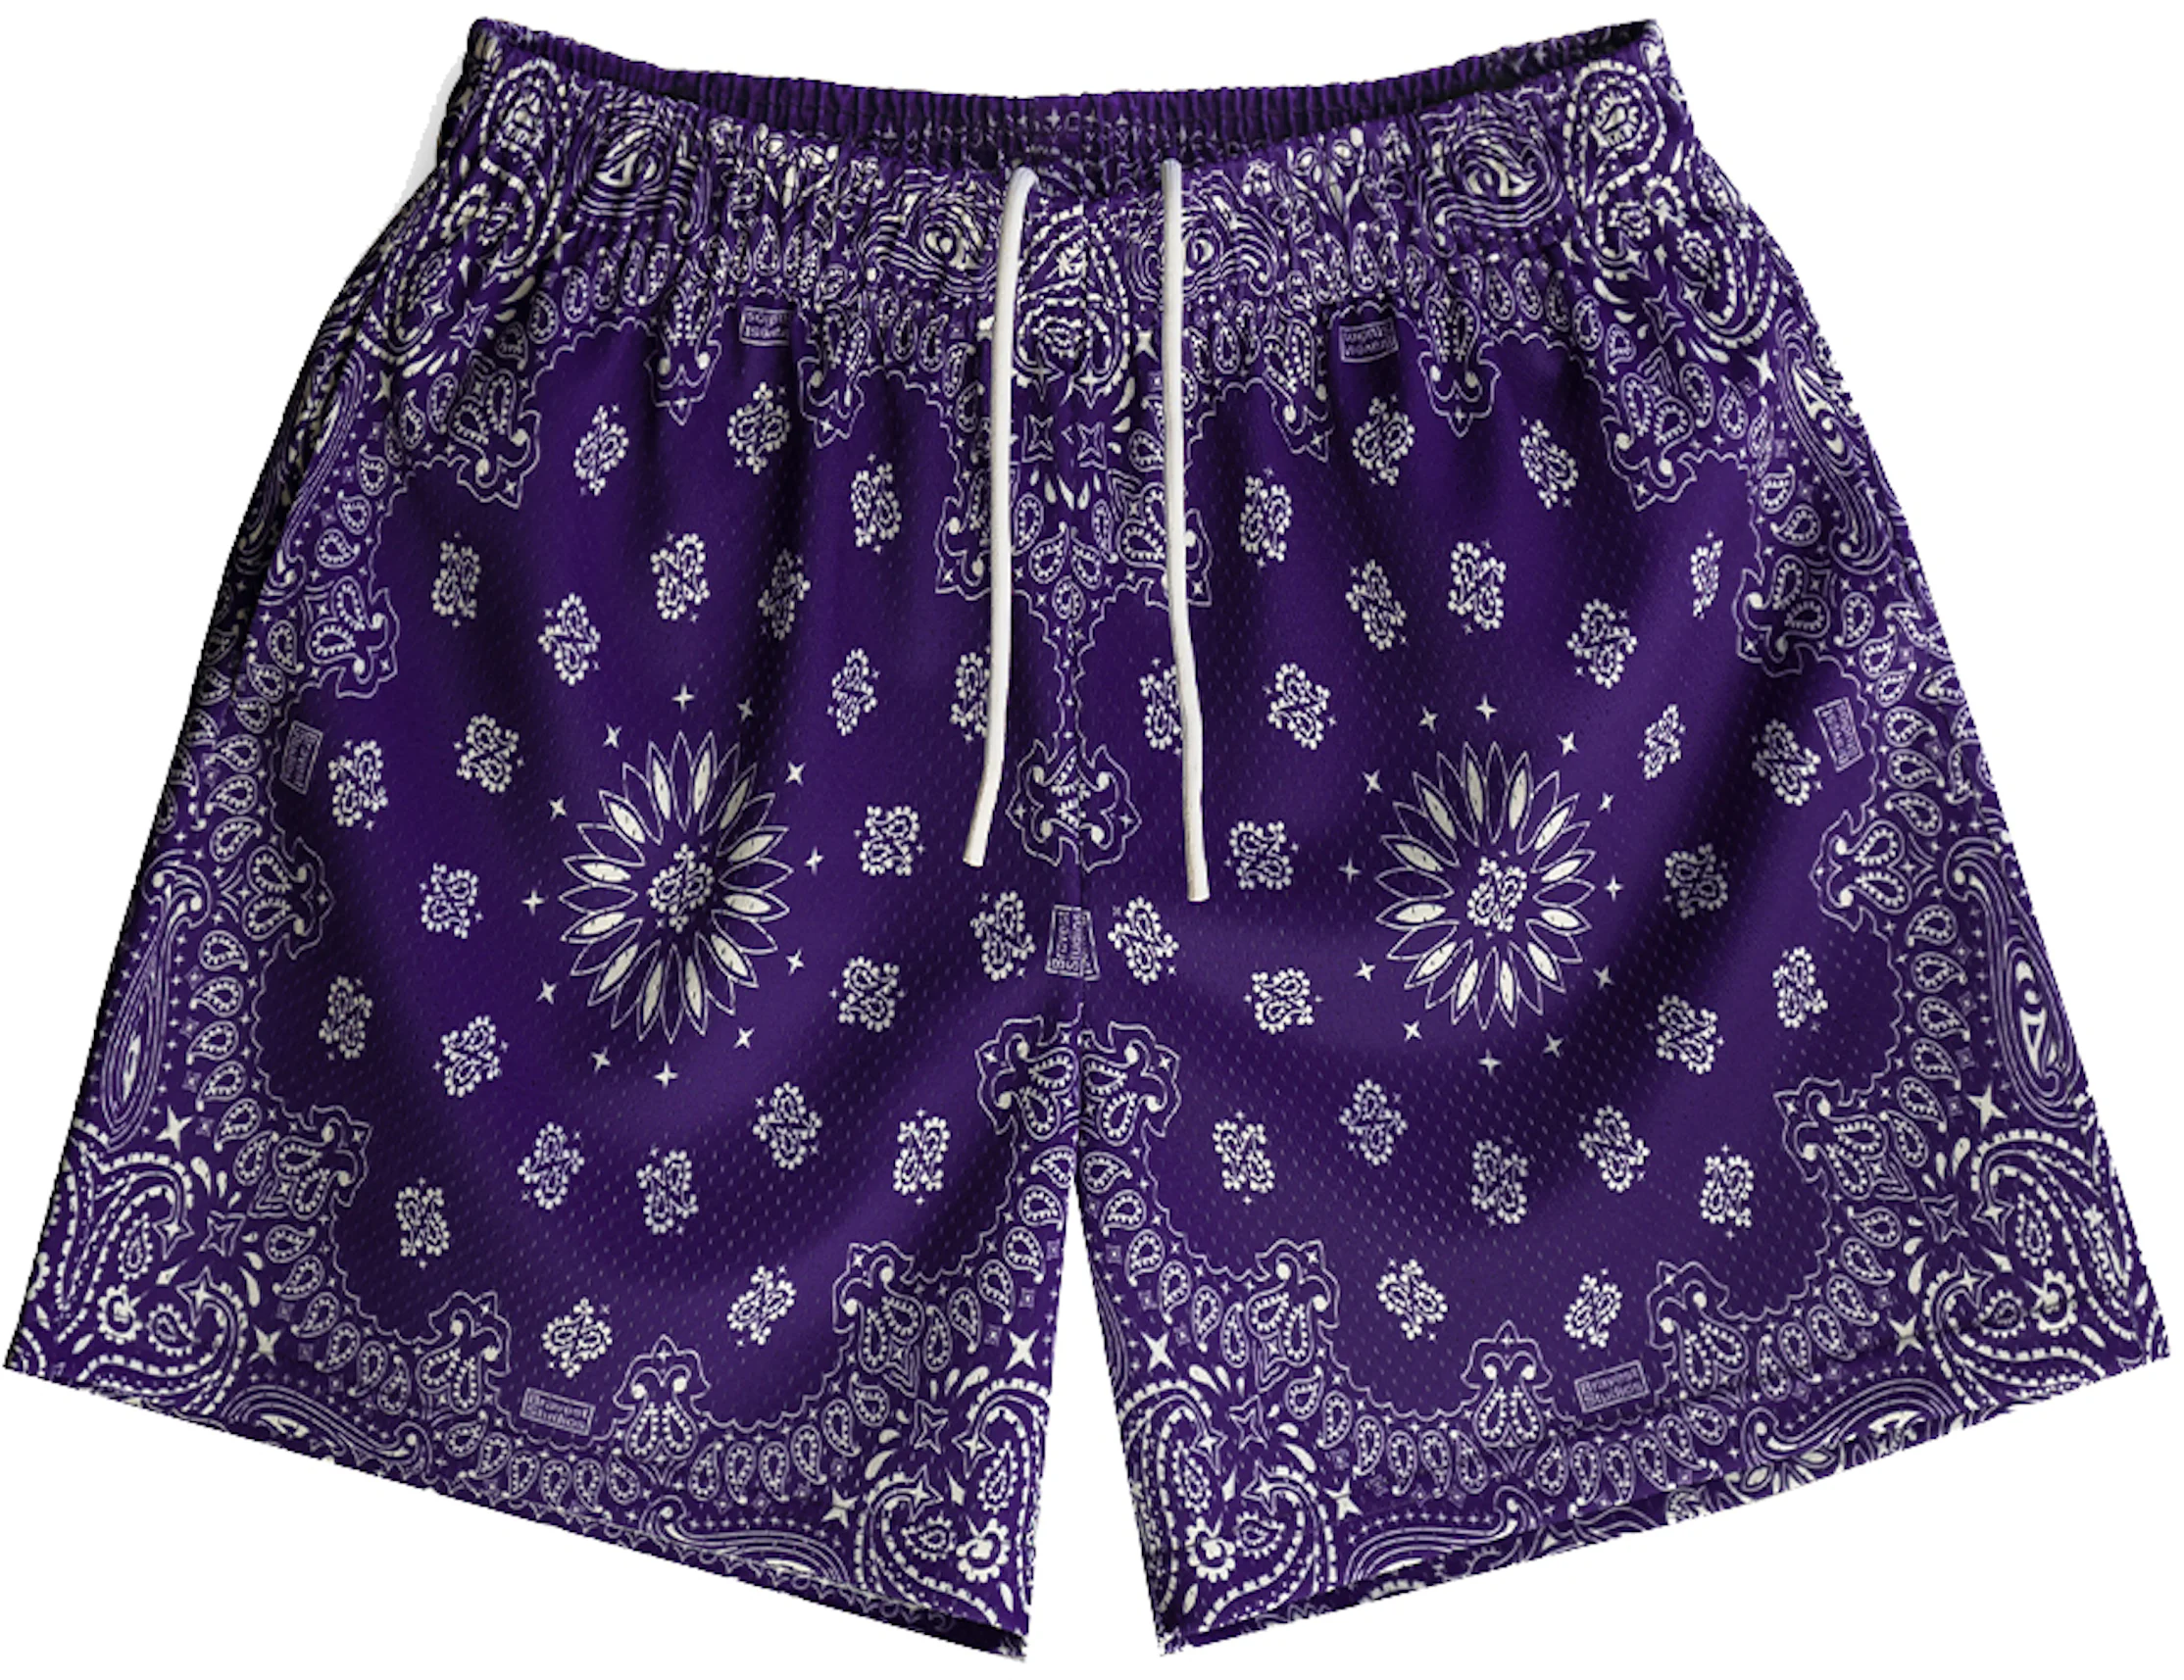 https://images.stockx.com/images/Bravest-Studios-Paisley-Shorts-Purple.jpg?fit=fill&bg=FFFFFF&w=1200&h=857&fm=webp&auto=compress&dpr=2&trim=color&updated_at=1649979703&q=60